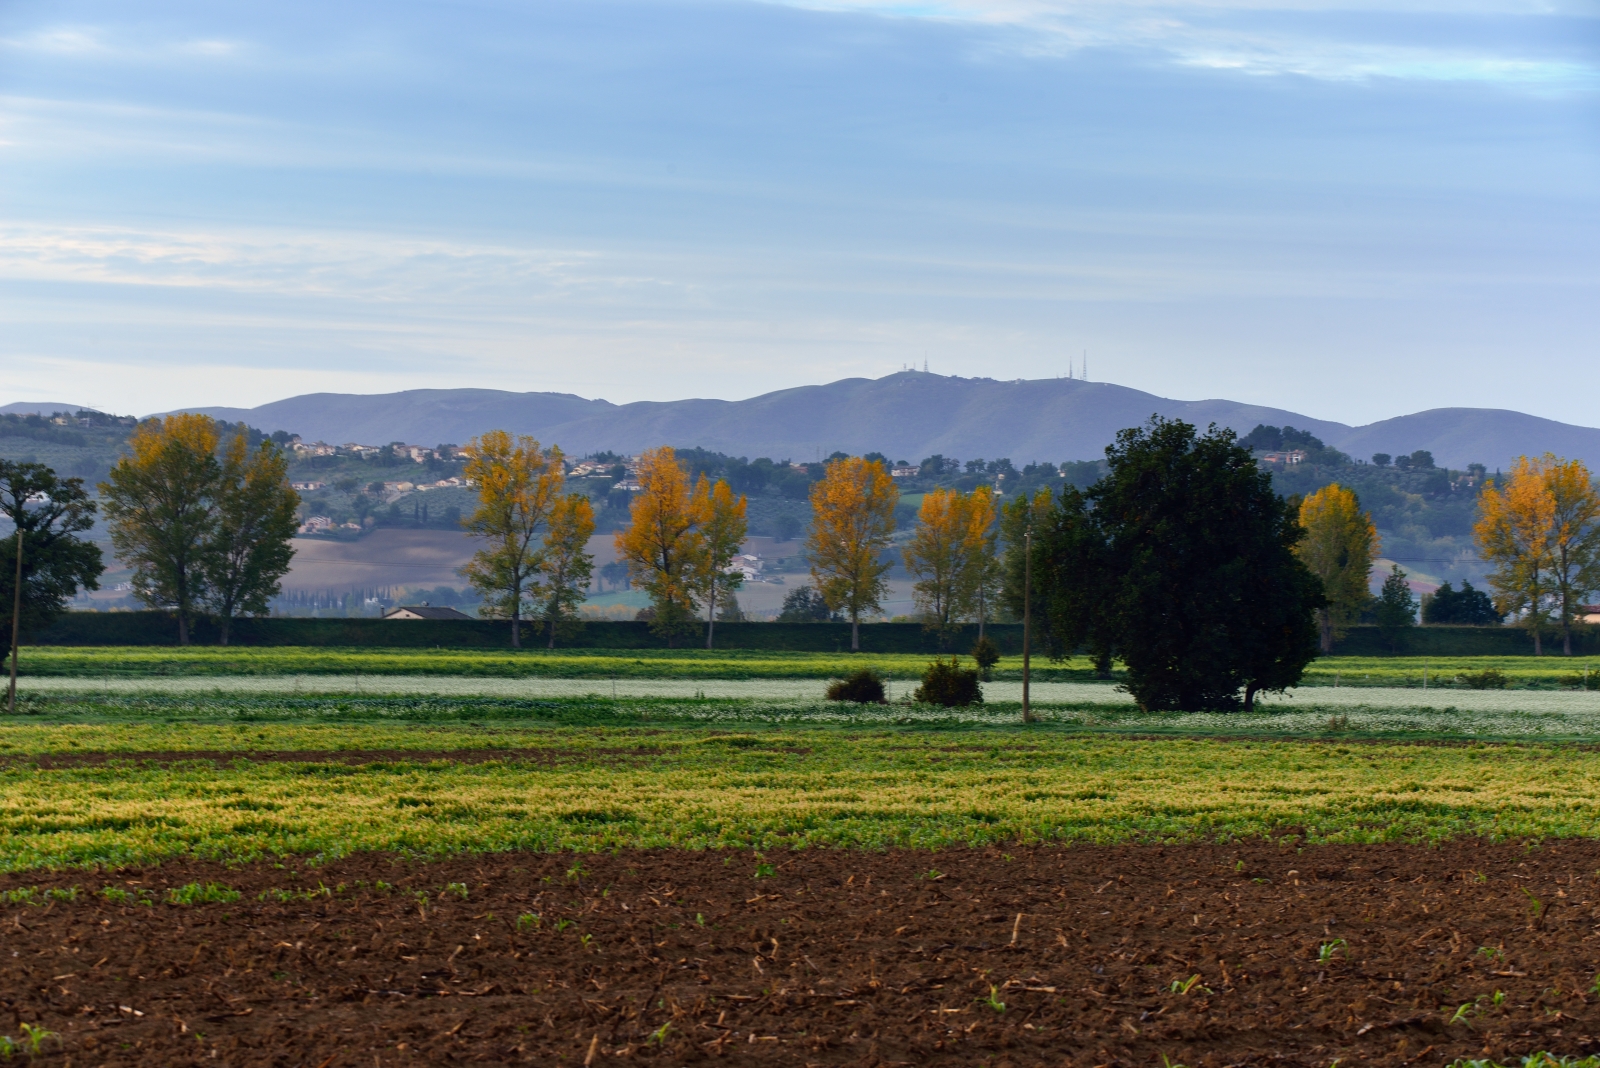 Landscape of November in Umbria...